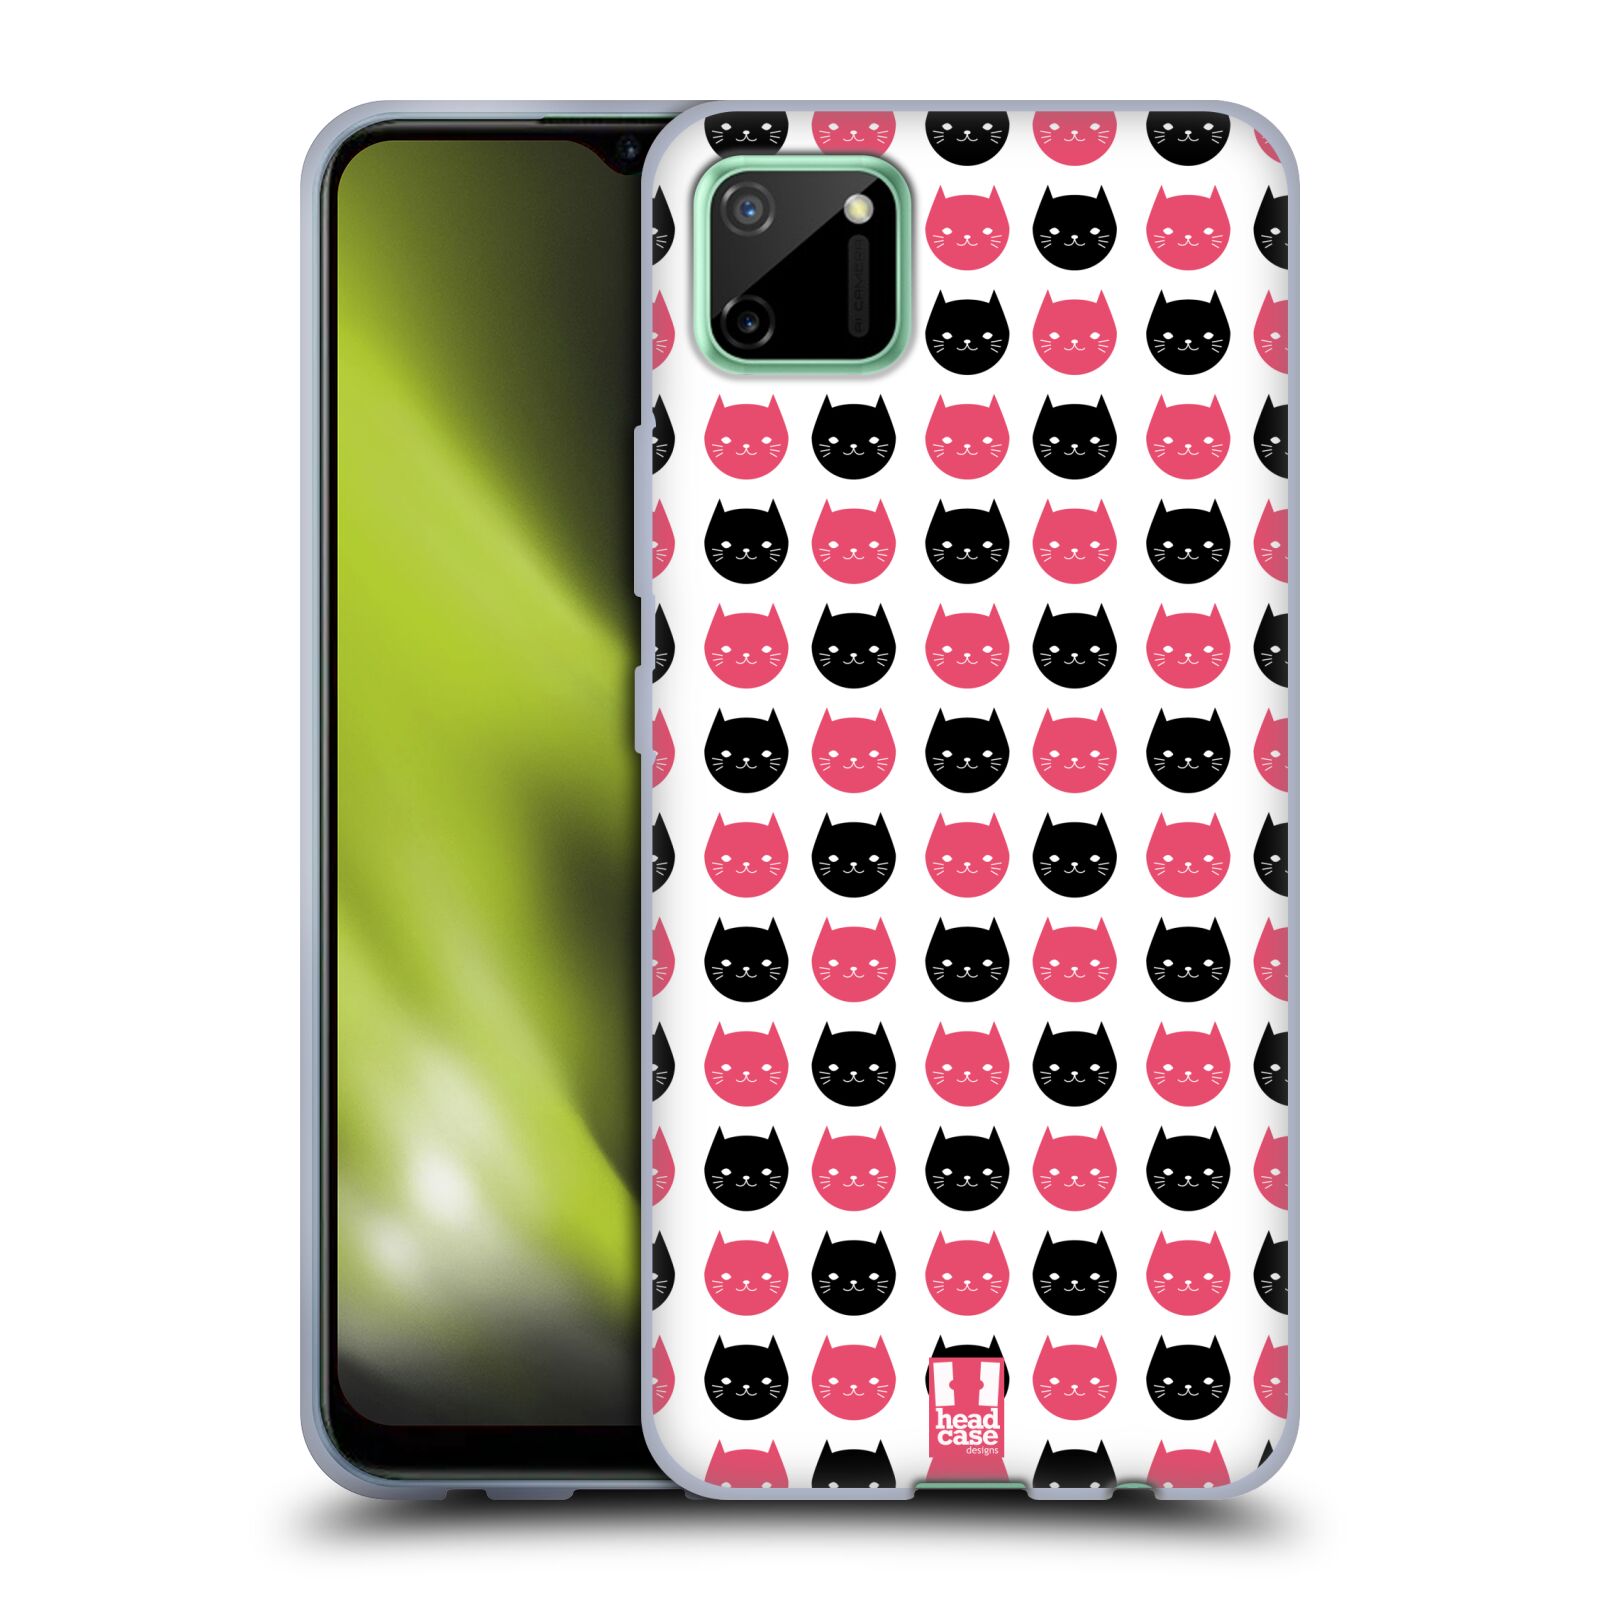 Silikonové pouzdro na mobil Realme C11 - Head Case - KOČKY Black and Pink